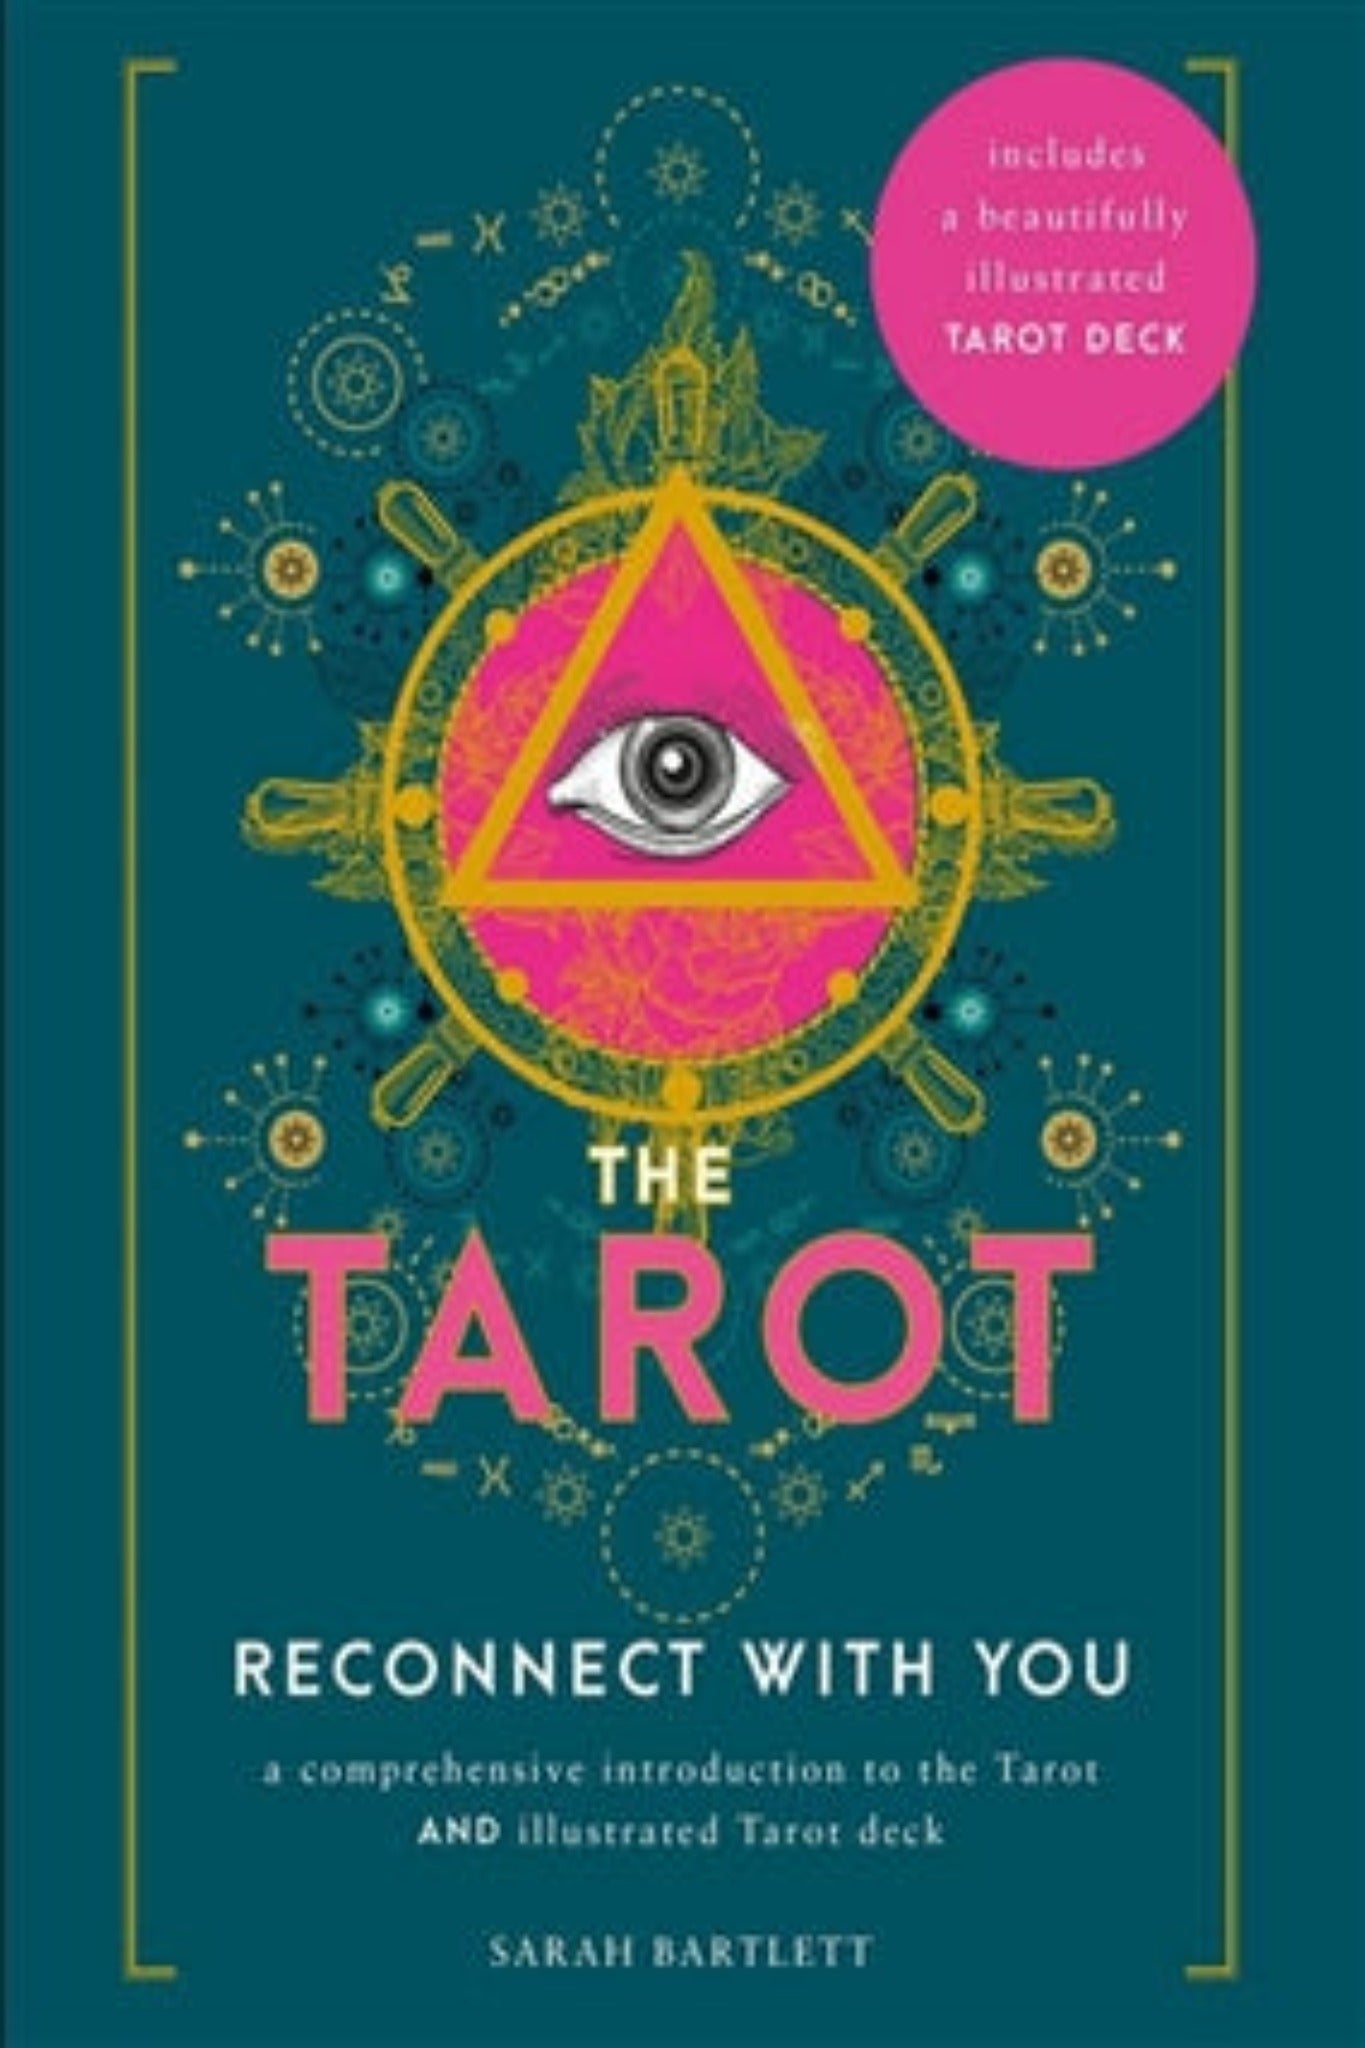 The tarot